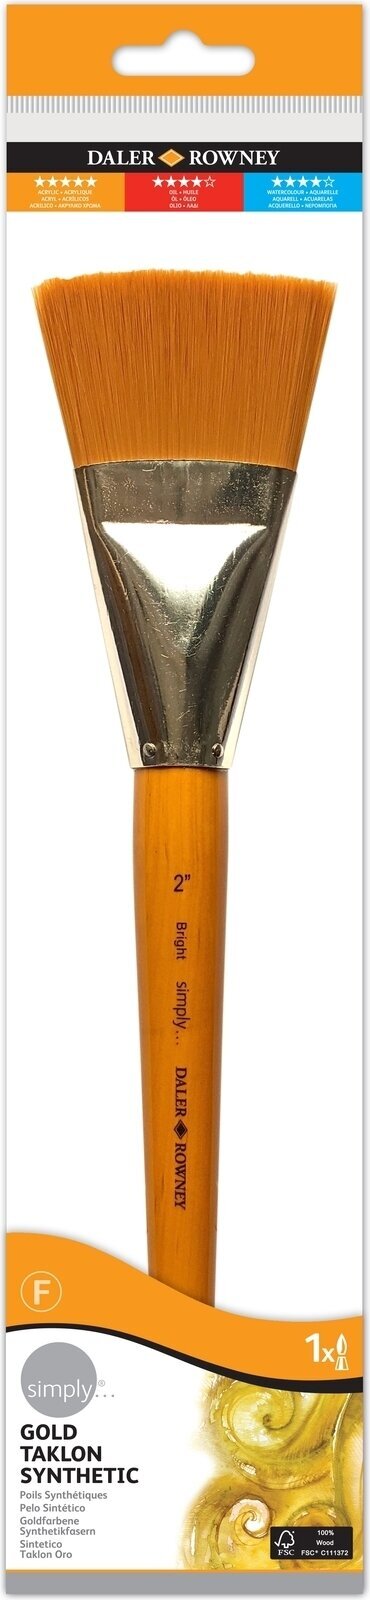 Pennello Daler Rowney Simply Acrylic Brush Gold Taklon Synthetic Pennello piatto 2 1 pz